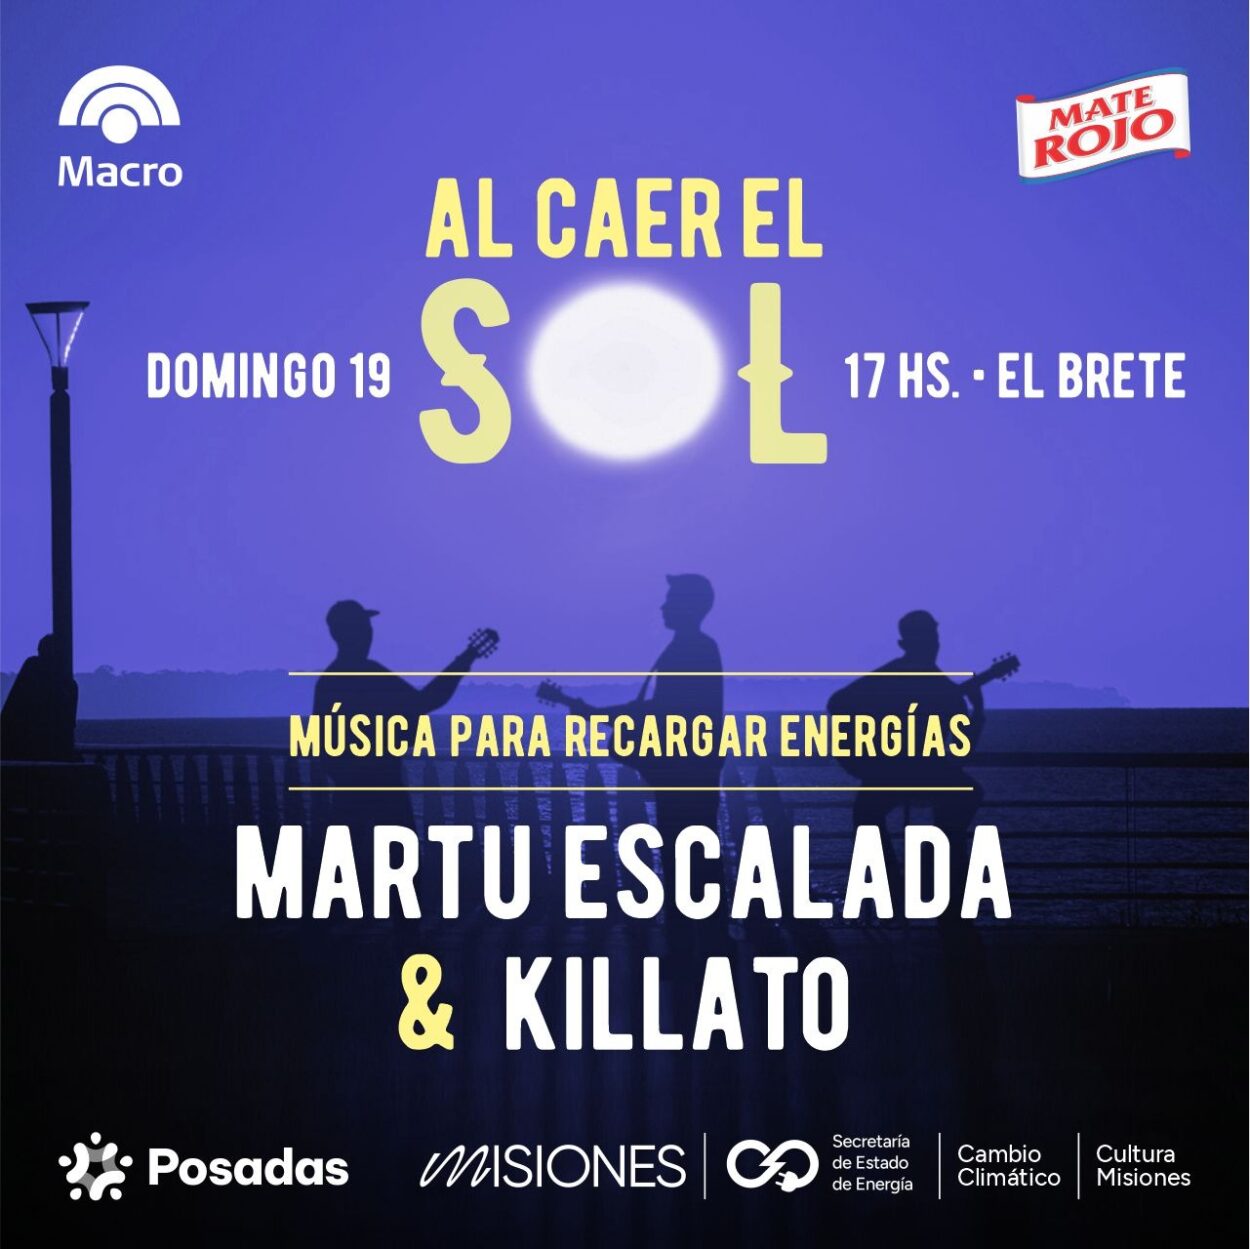 Martu Escalada y Killato: rock y música urbana este domingo “Al caer el sol en El Brete” imagen-7